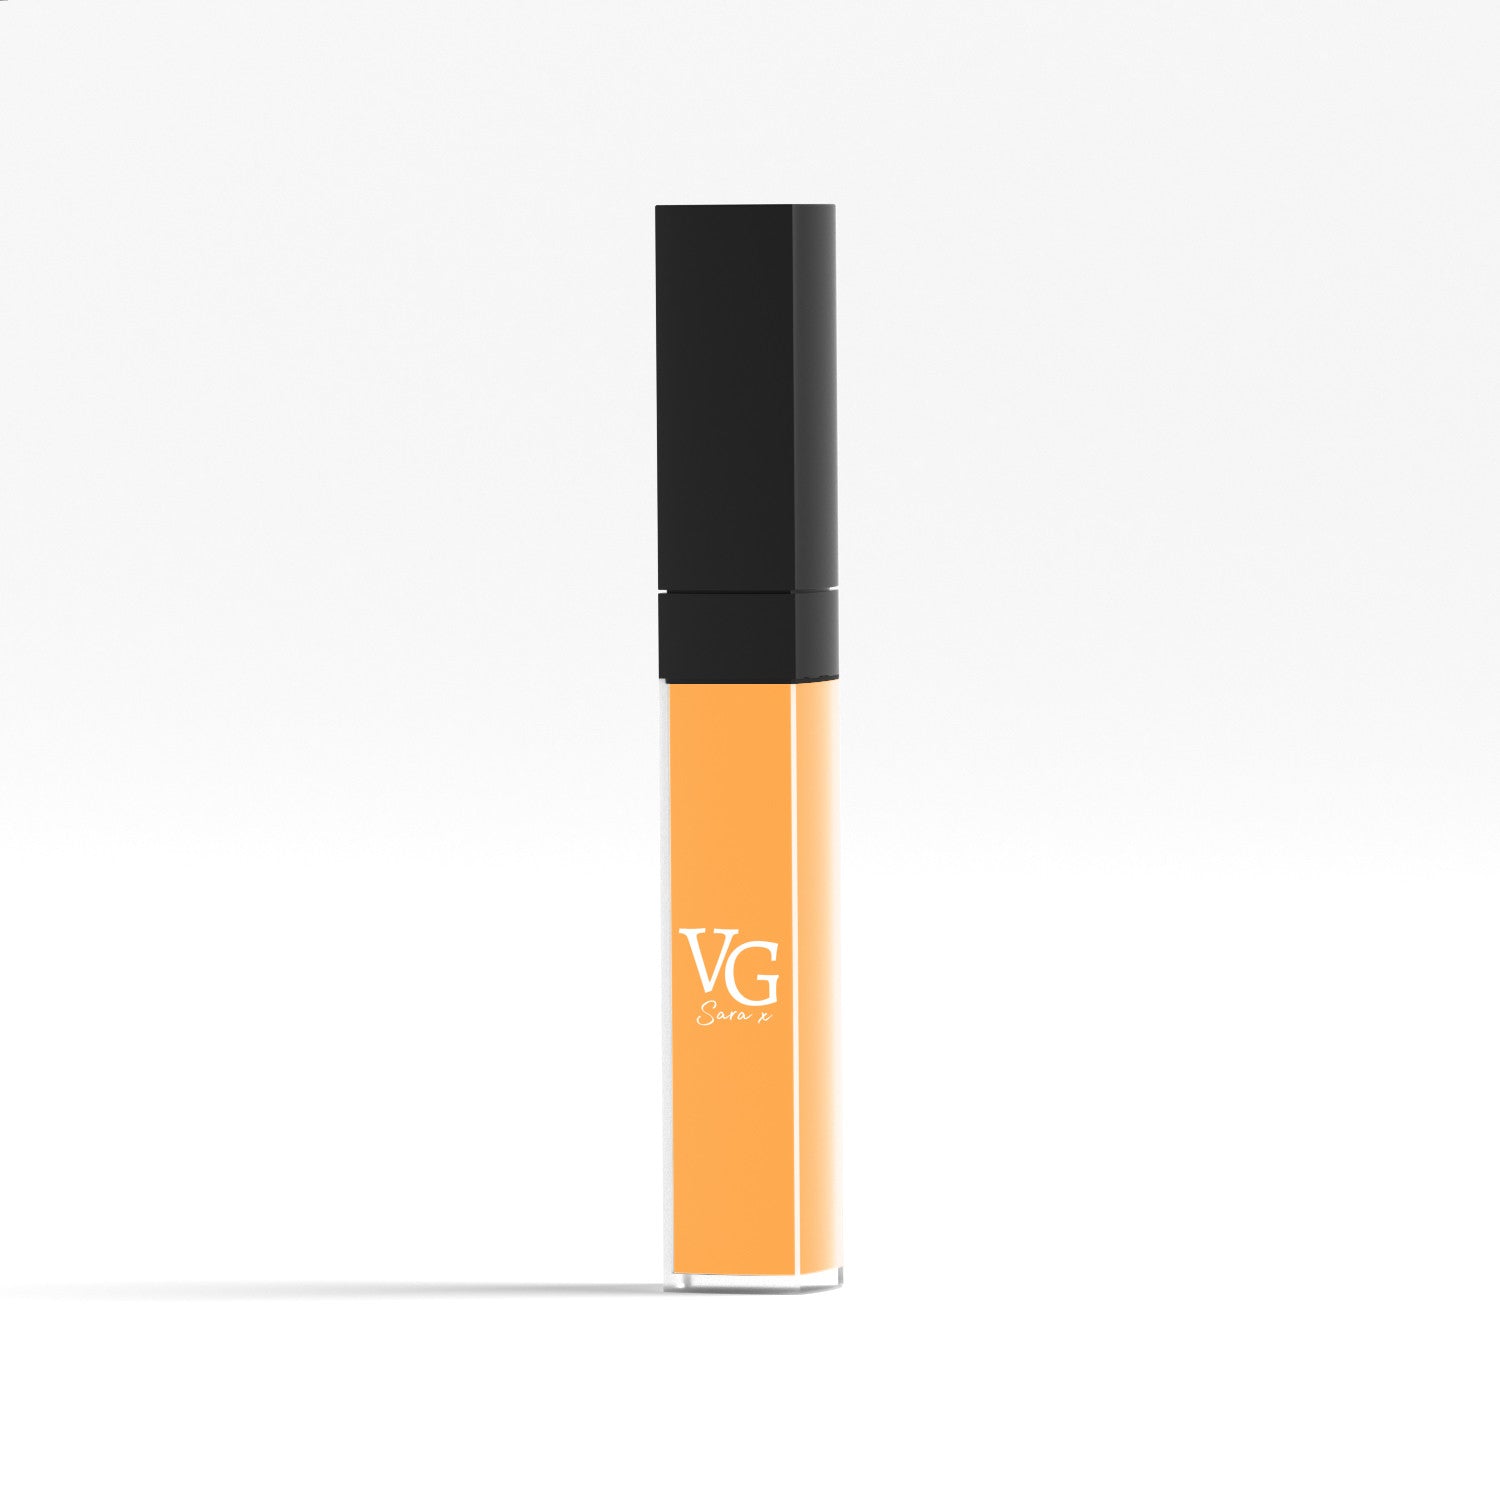 Vegan liquid lipstick by VG in sleek tube packaging